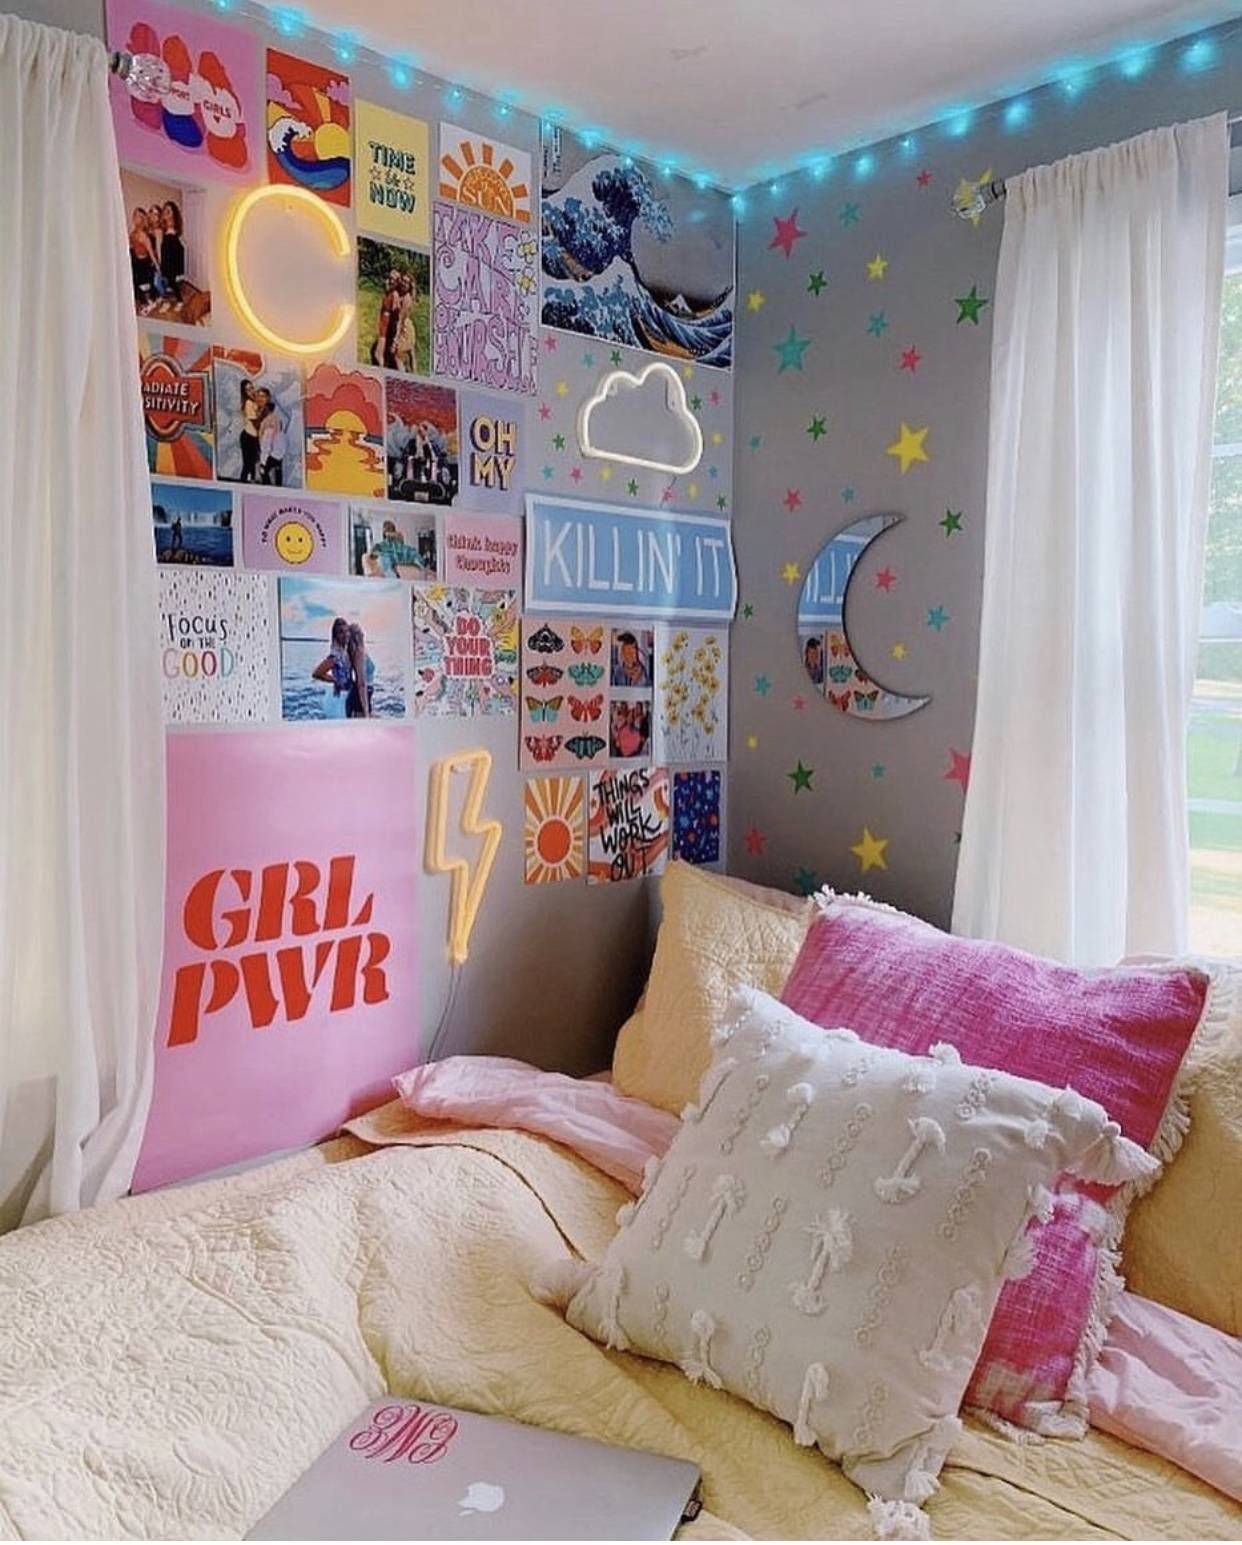 10 VSCO Bedroom Ideas for the VSCO Girl  - The Pink Dream - 10 VSCO Bedroom Ideas for the VSCO Girl  - The Pink Dream -   19 diy Room vsco ideas